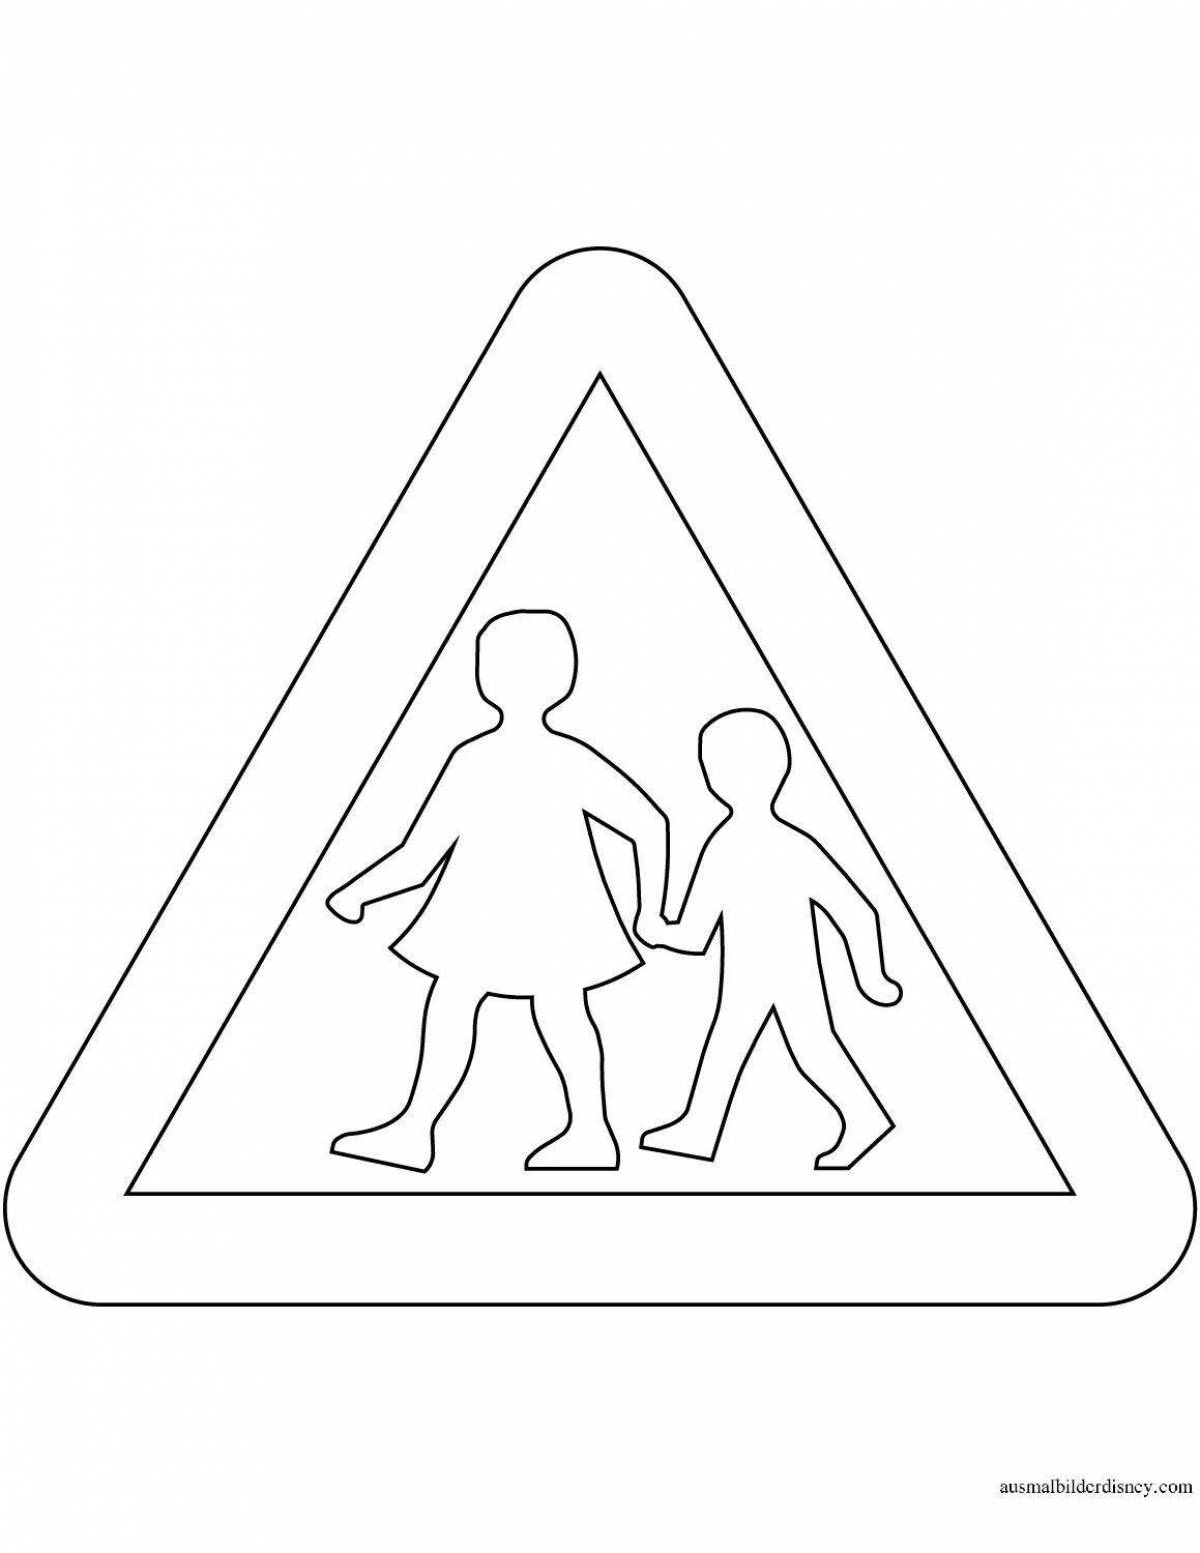 Caution children sign #6